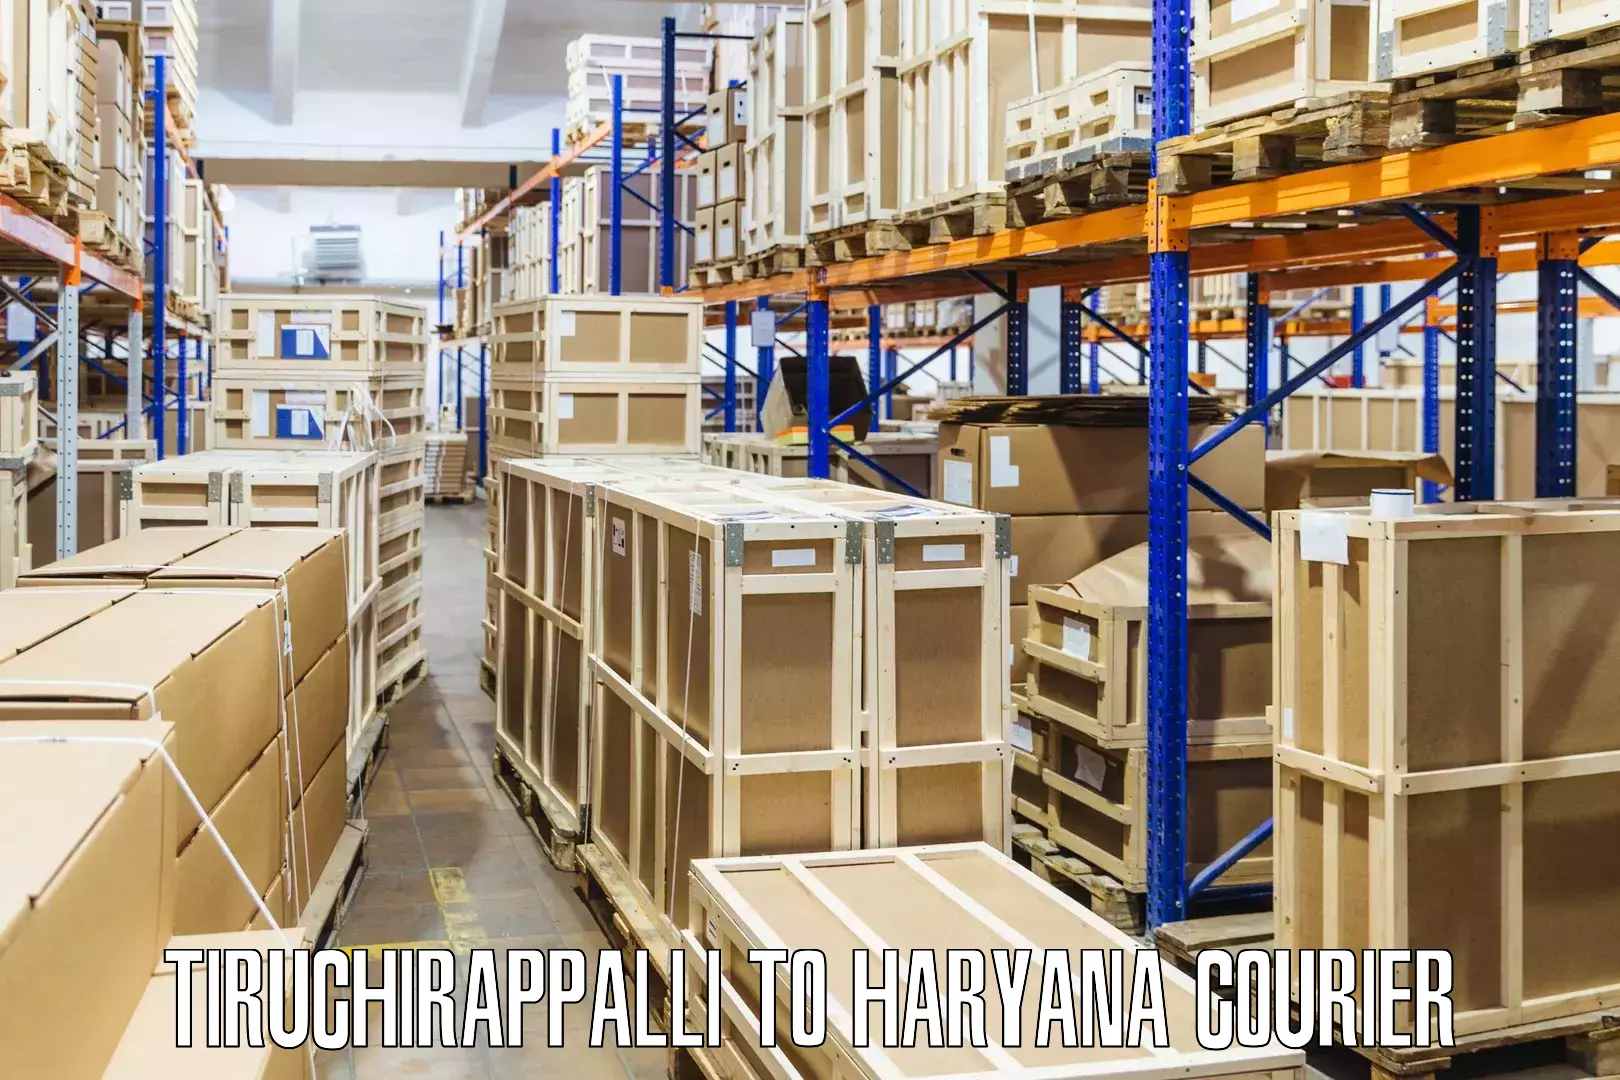 Nationwide shipping capabilities Tiruchirappalli to Sonipat